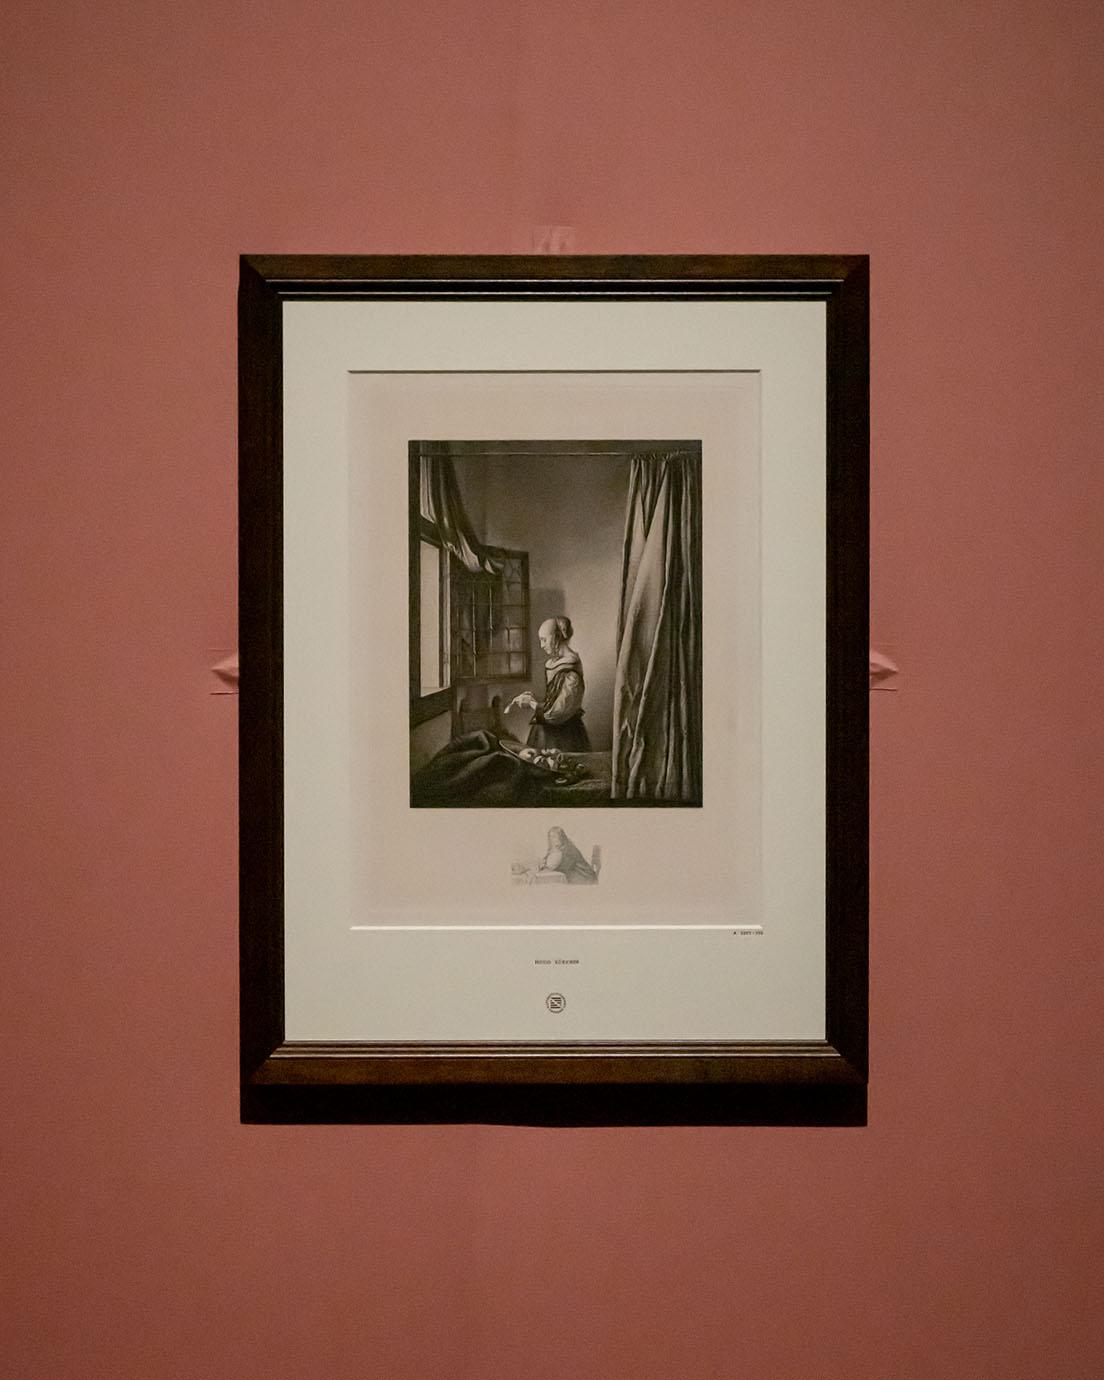 ヒューゴ・ビュルクナー《窓辺で手紙を読む女（フェルメールの原画に基づく）》（1893年、ドレスデン版画素描館）。この少し前、1862年にこの絵の作者がフェルメールであると認められている。それまではピーテル・デ・ホーホなど、別の画家の作だと考えられていた。